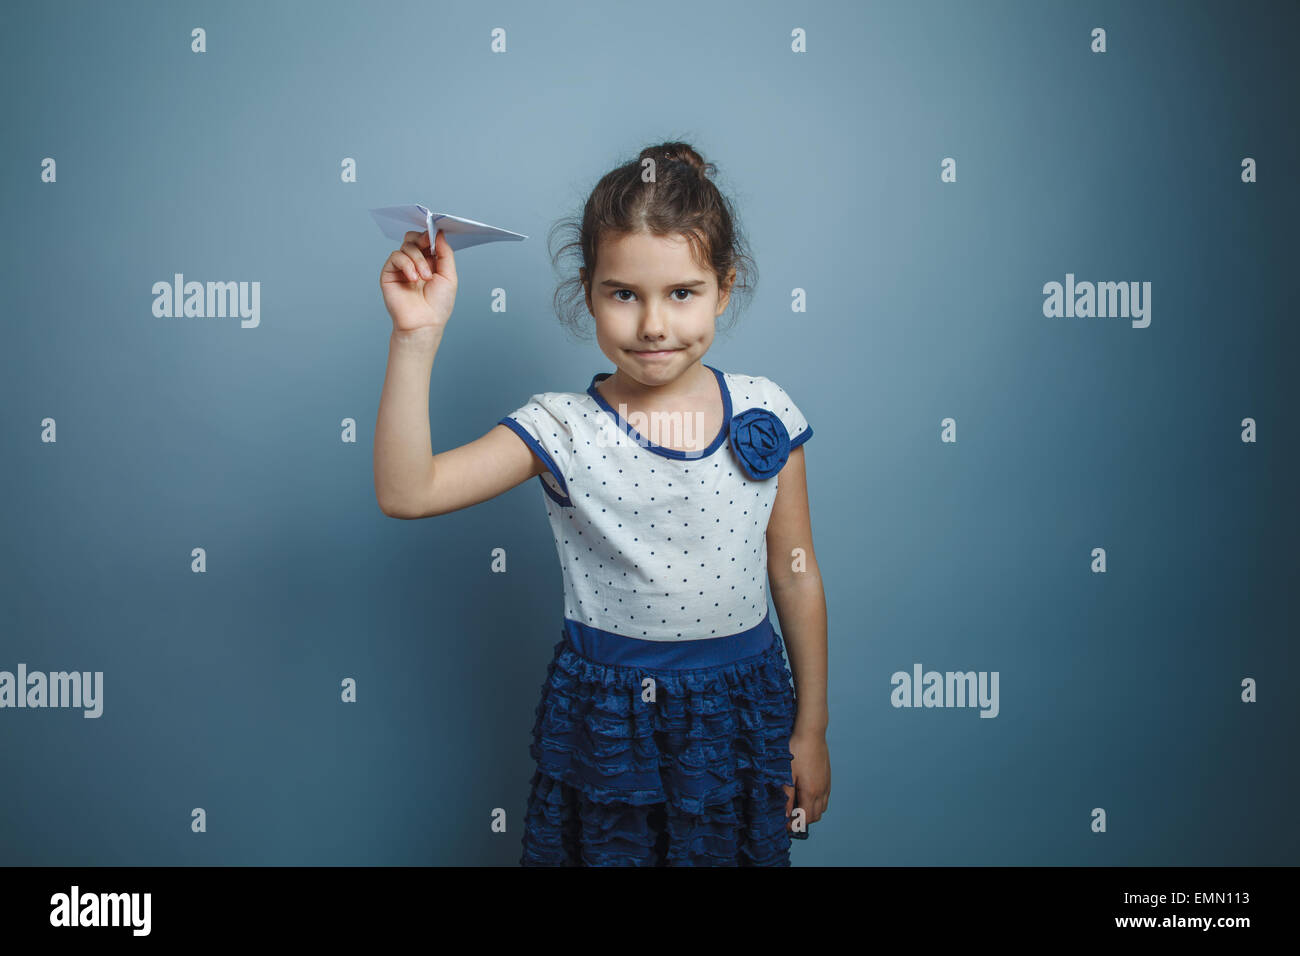 eine Mädchen von sieben europäischen Aussehen Brünette hält einen Papierflieger auf einem grauen Hintergrund, Lächeln Stockfoto